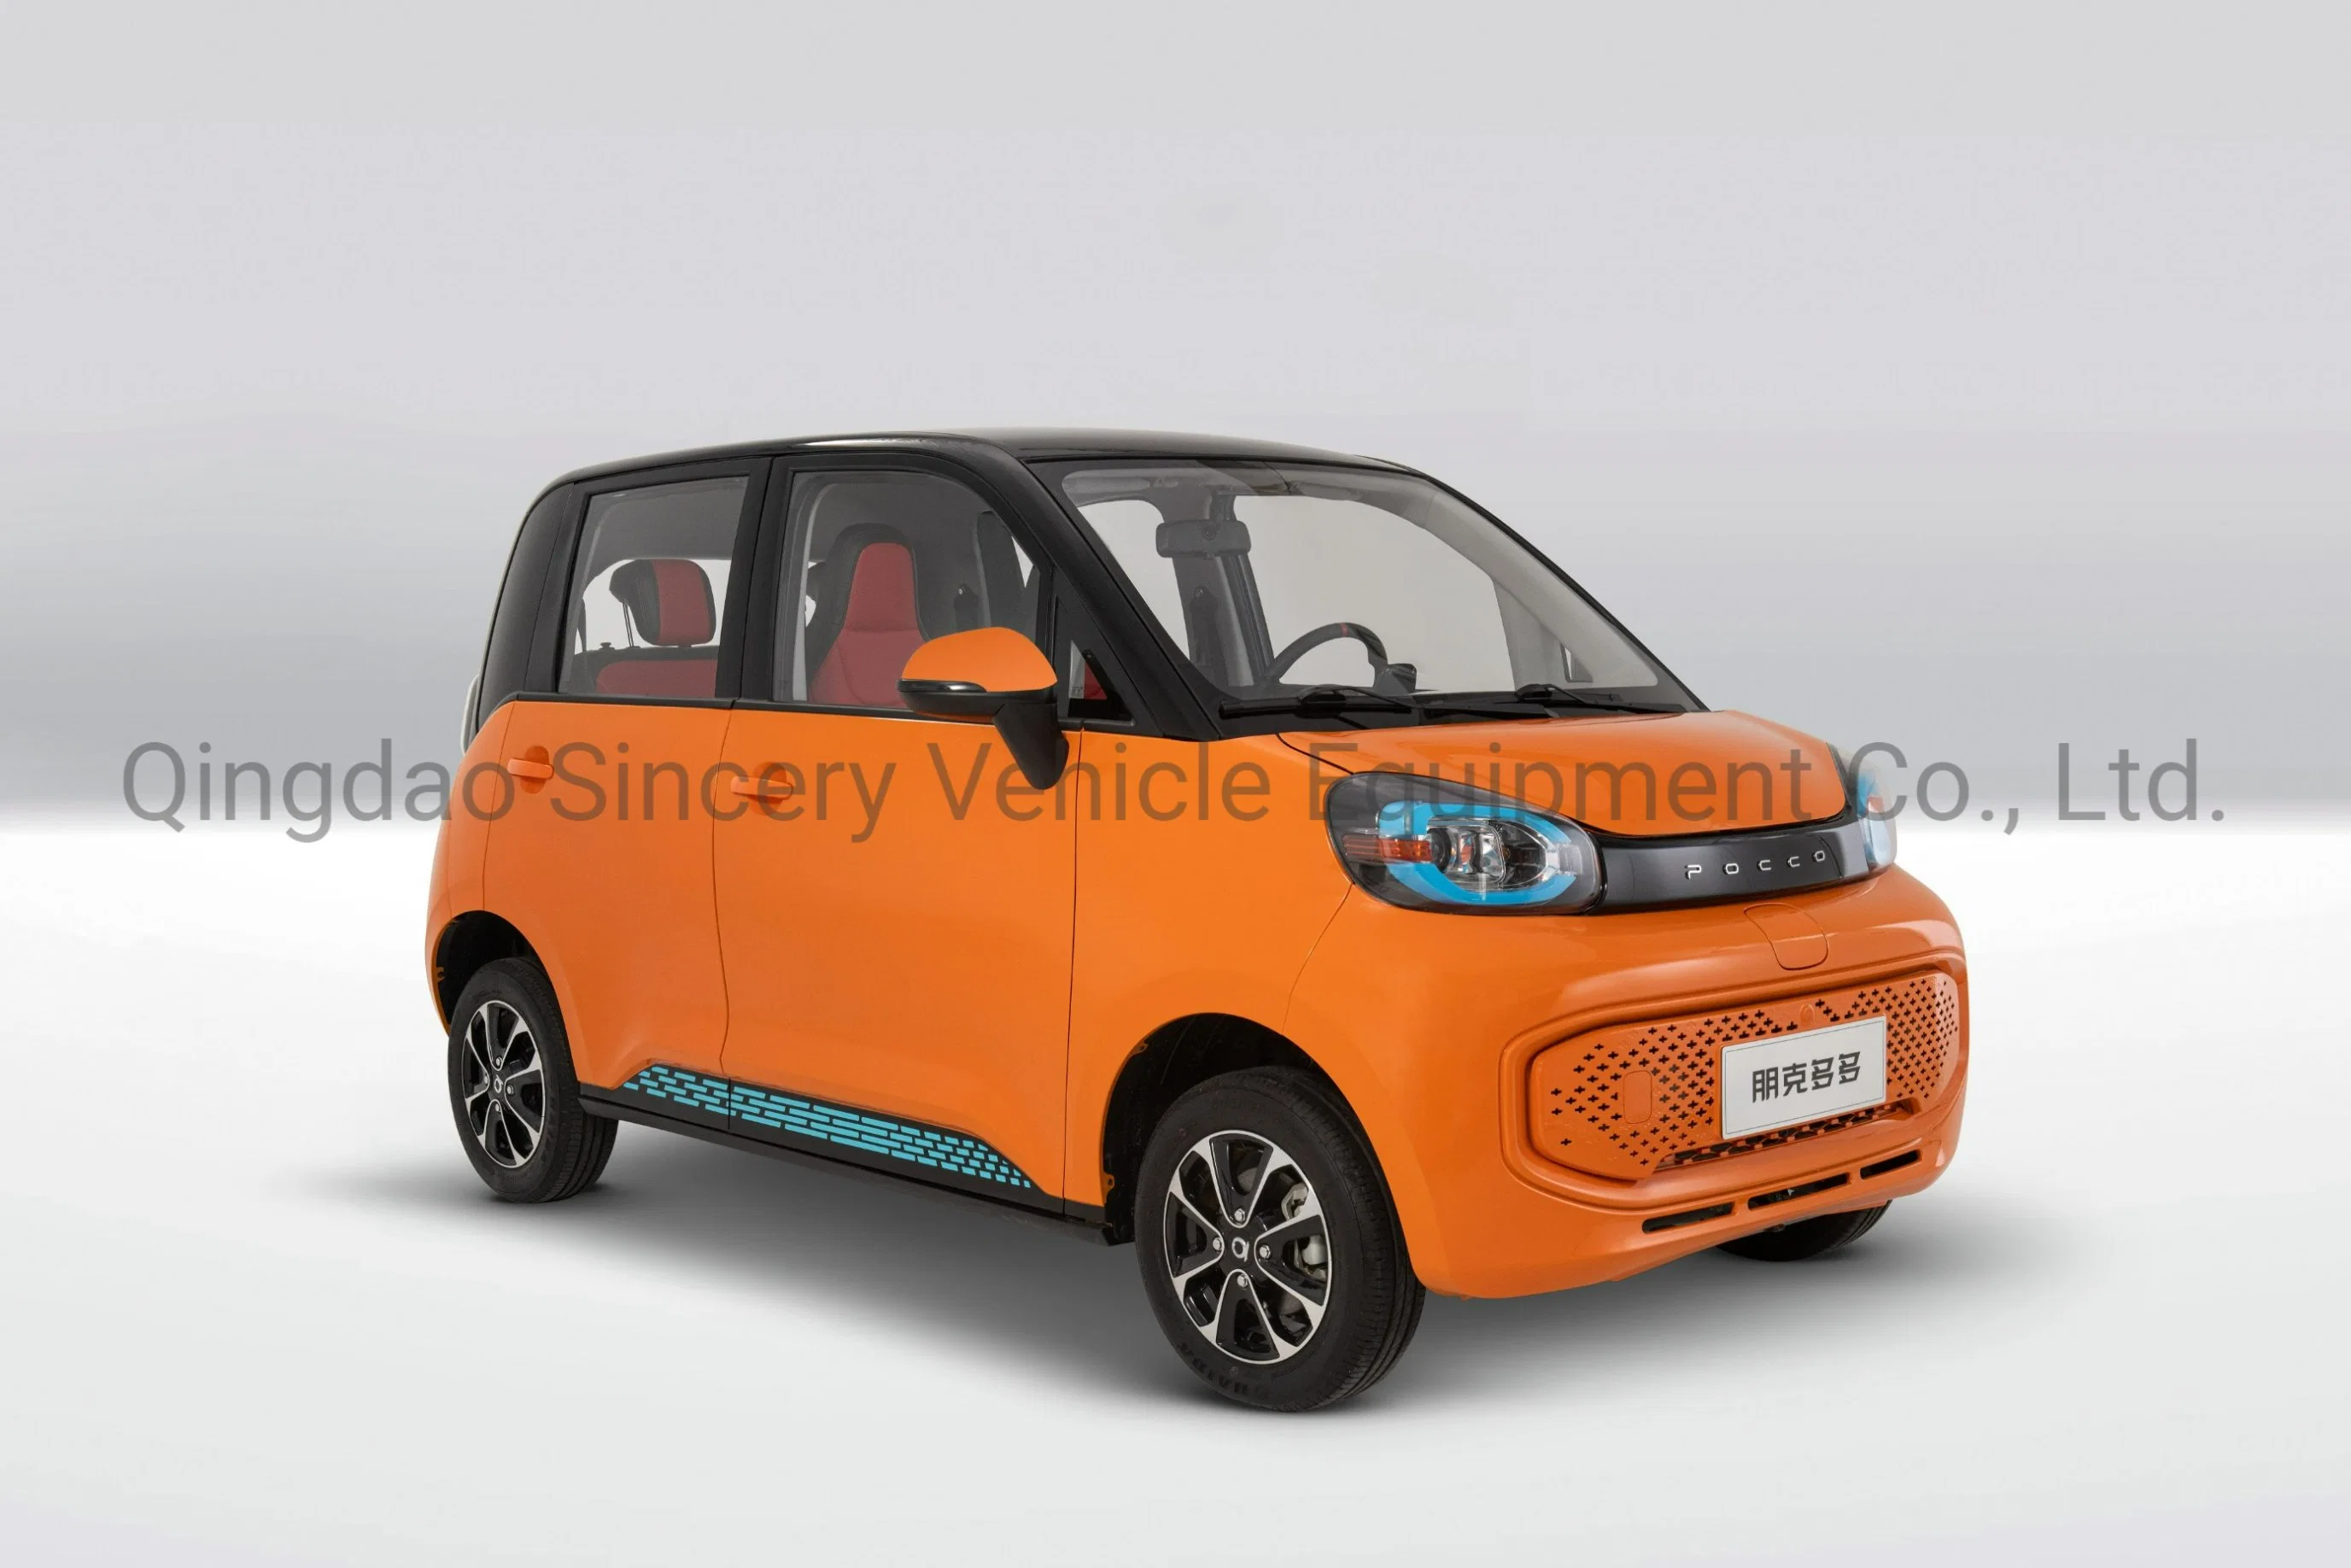 Автомобиль солнечной энергии Китая производителя с высокой скоростью Minicar мини-EV Электромобиль Электромобиль электрический автомобиль бев автомобильного аккумулятора автомобильной аккумуляторной батареи автомобиля автомобилей солнечной энергии